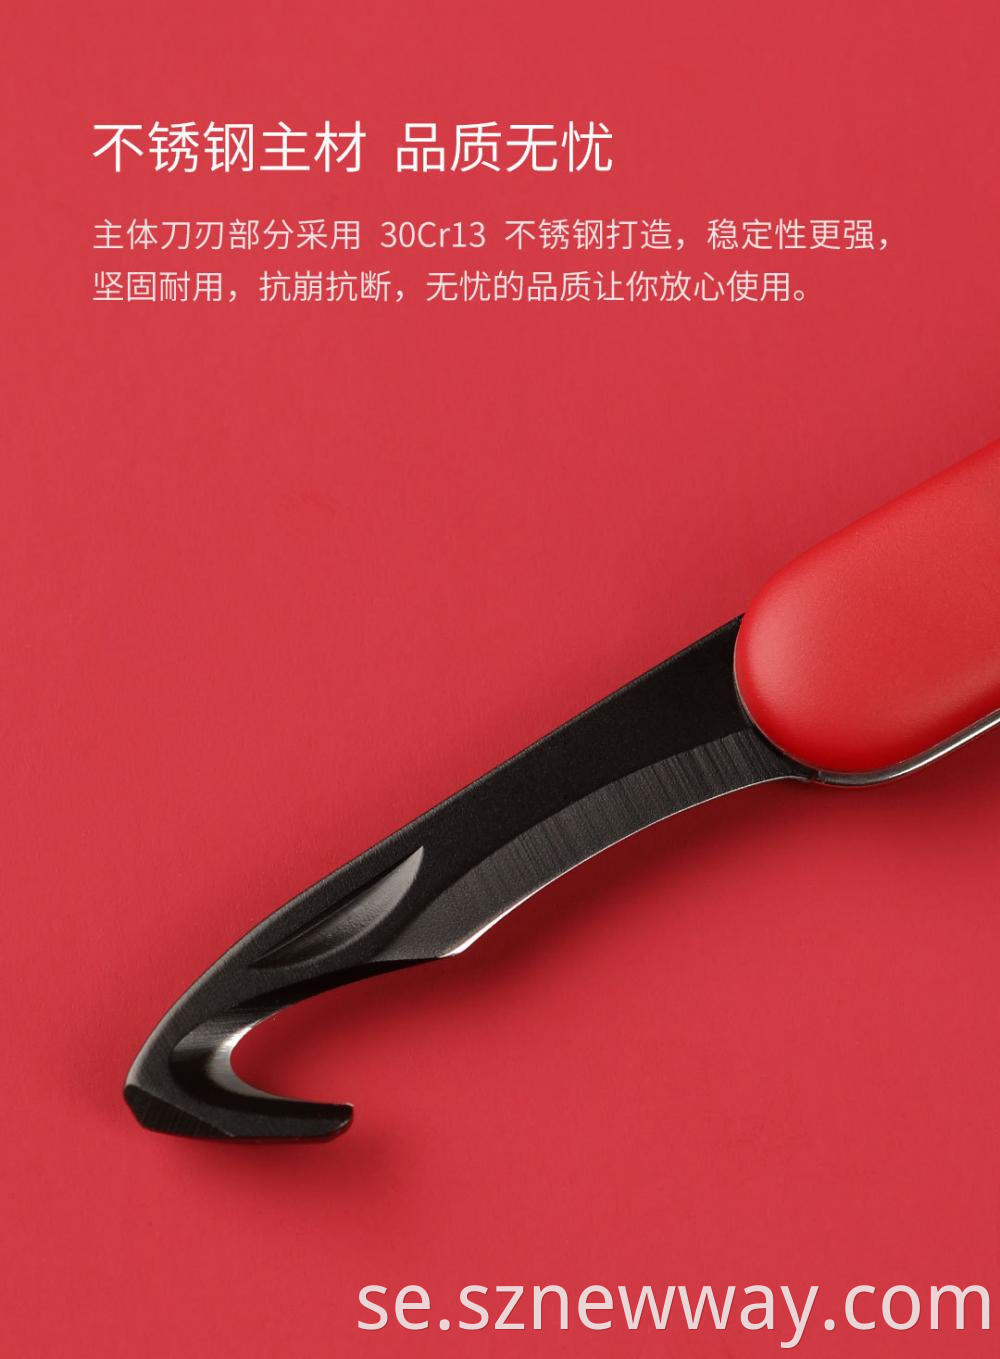 Huohou Mini Knife